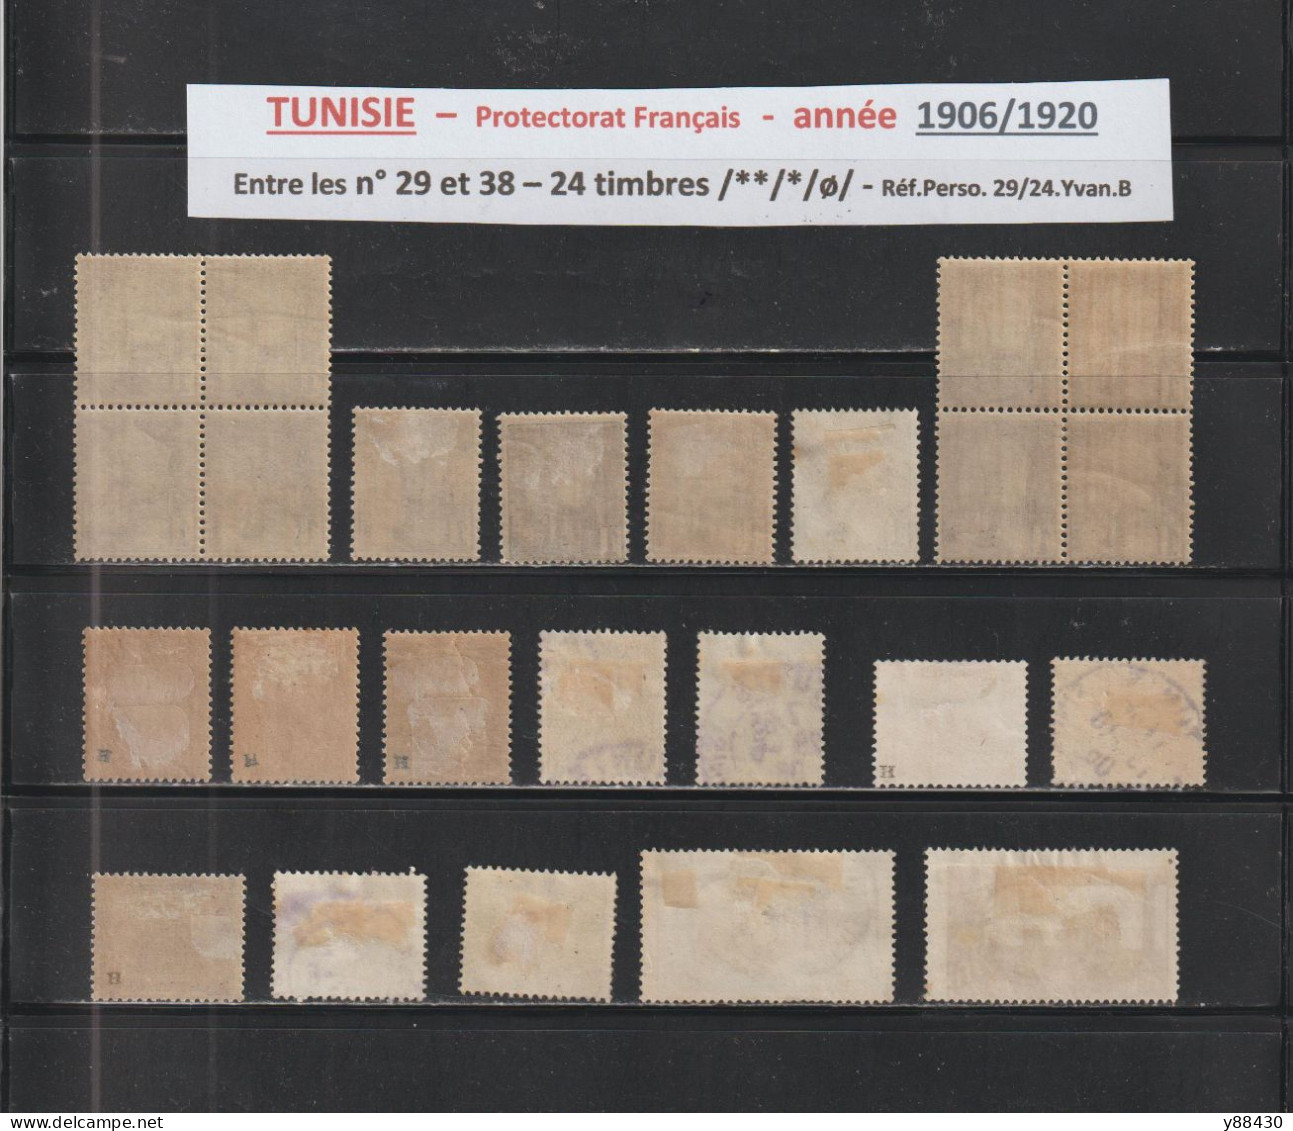 TUNISIE -  Protectorat Français - 24 Timbres Neufs Et Oblitérés  - Entre Les N° 29 Et 38 De 1906/1920 - 2 Scan - Ungebraucht